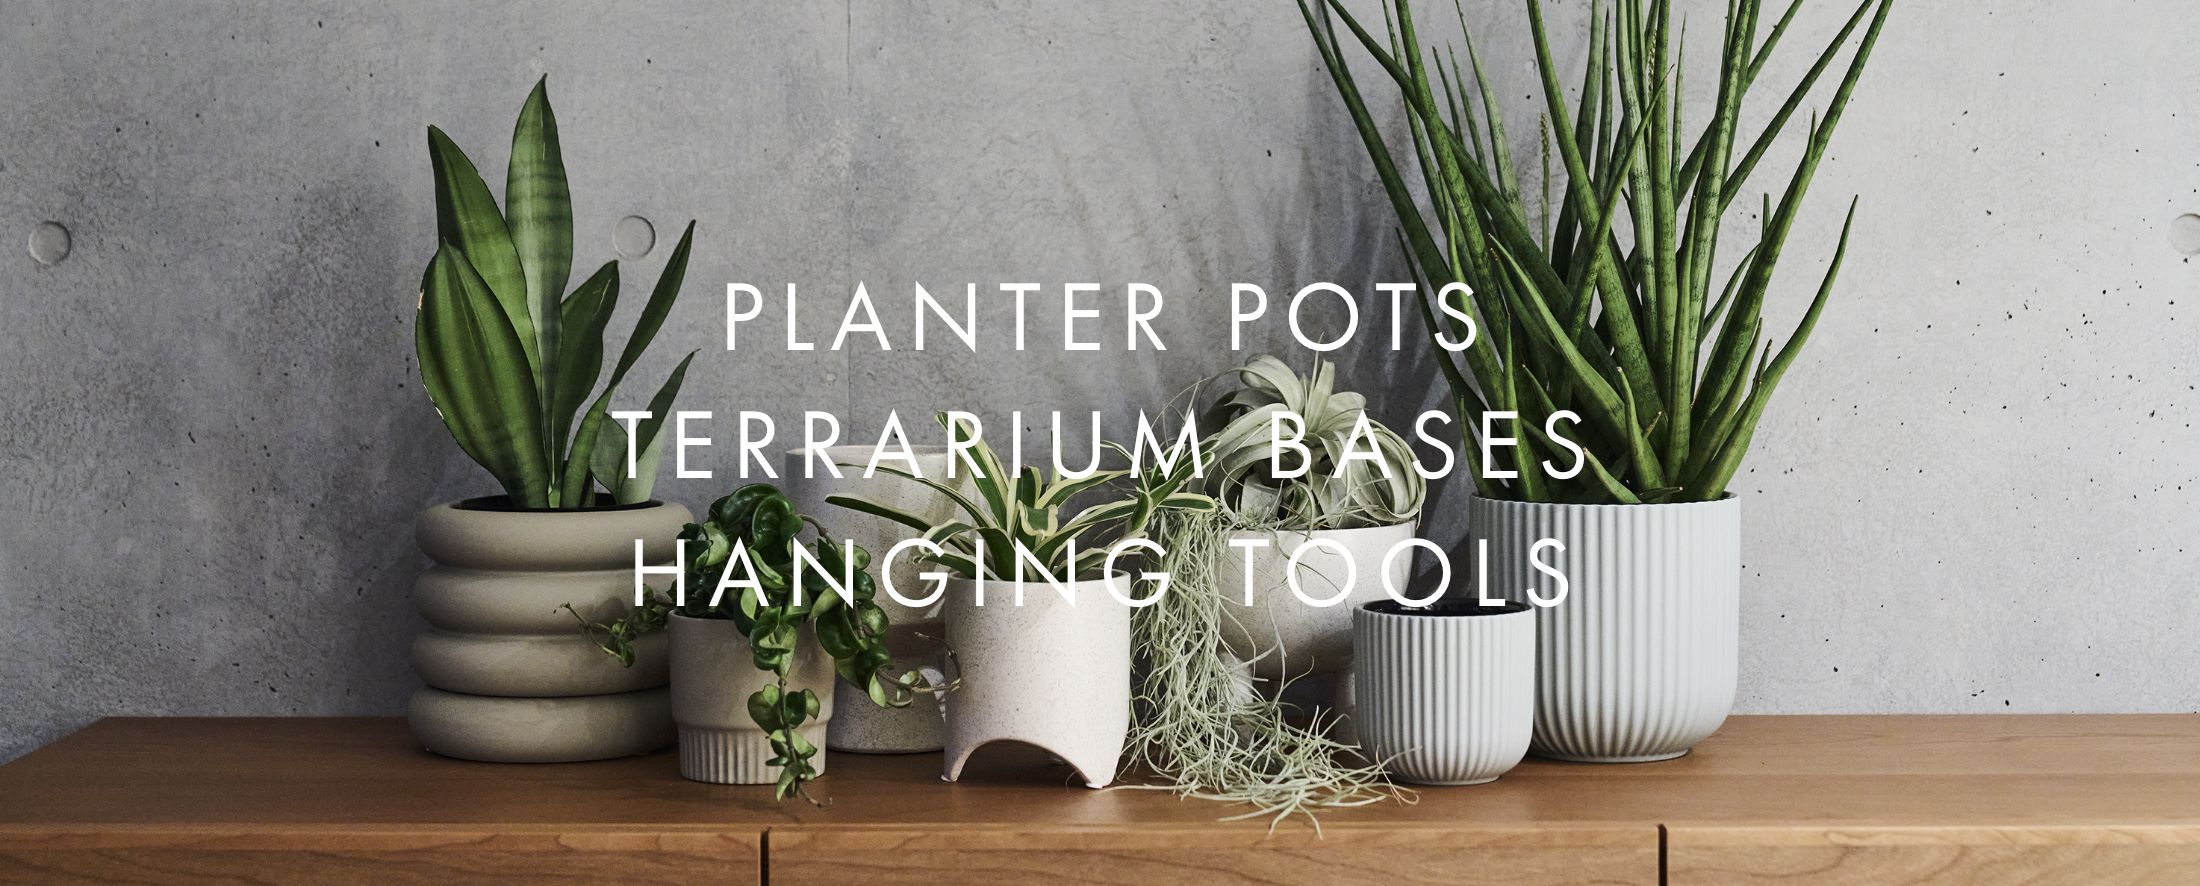 Planter pots terrarium bases hanging tools